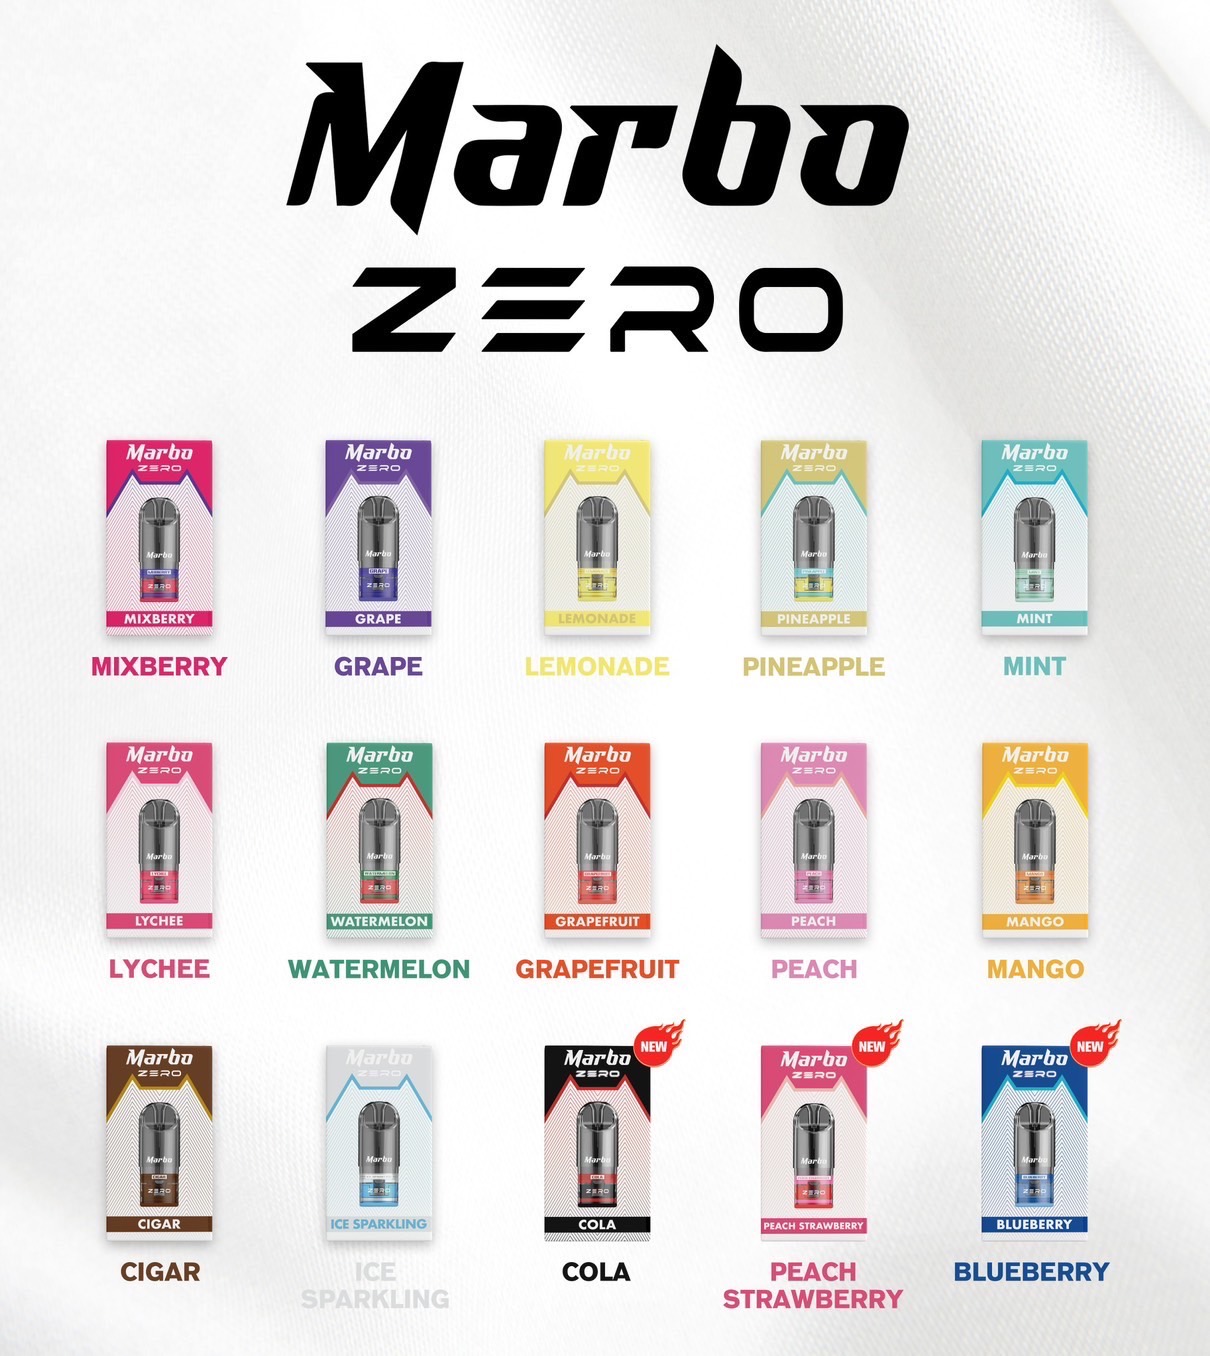 Marbo Zero